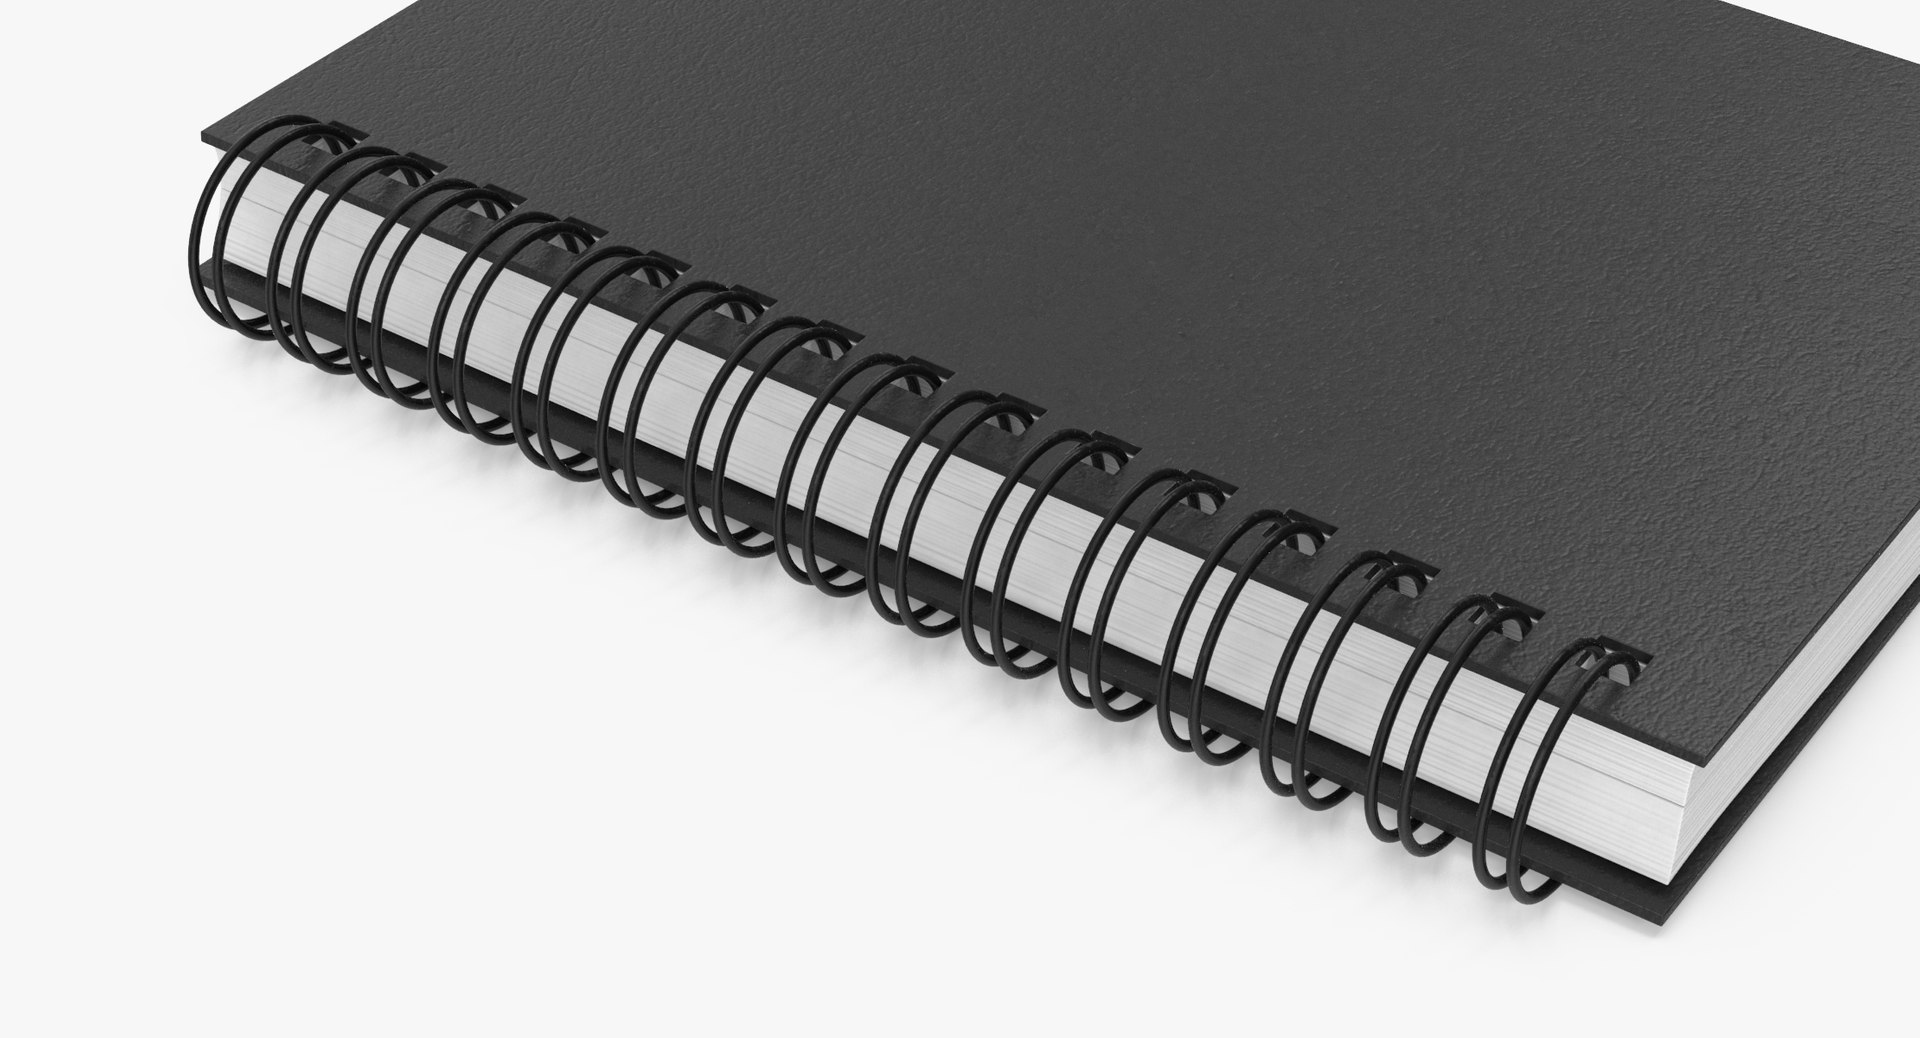 Spiral sketchbook 03 3D model - TurboSquid 1209508